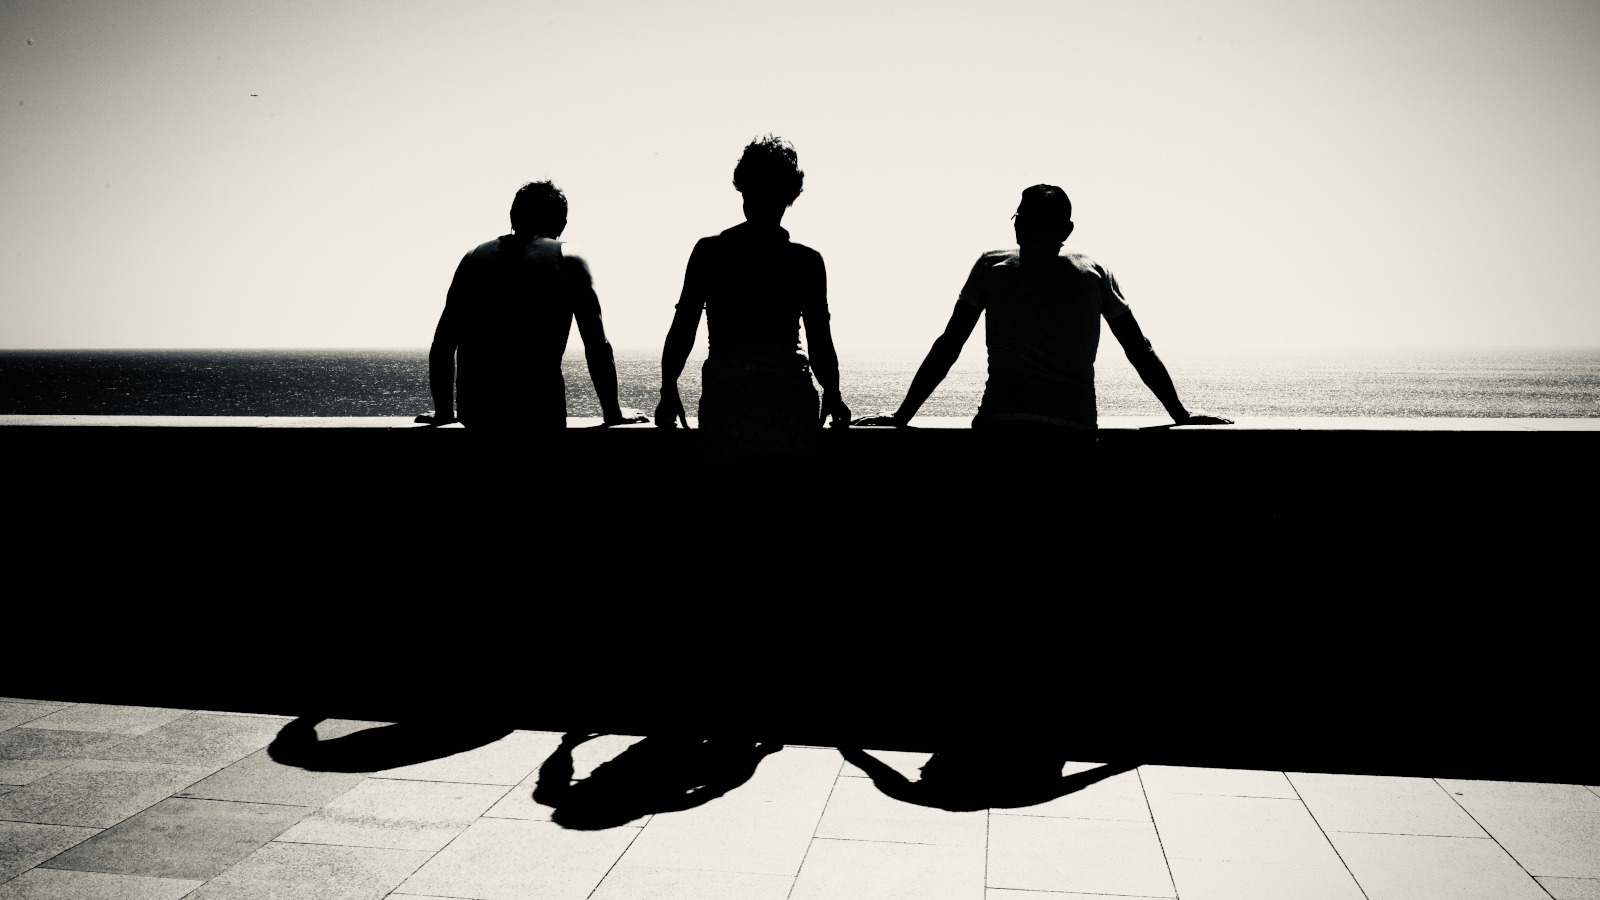 Kuvassa on kolme miestä kuvattuna takaa päin ja he katselevat merelle betonisen kaiteen äärellä. Kuva on musta-valkoinen.